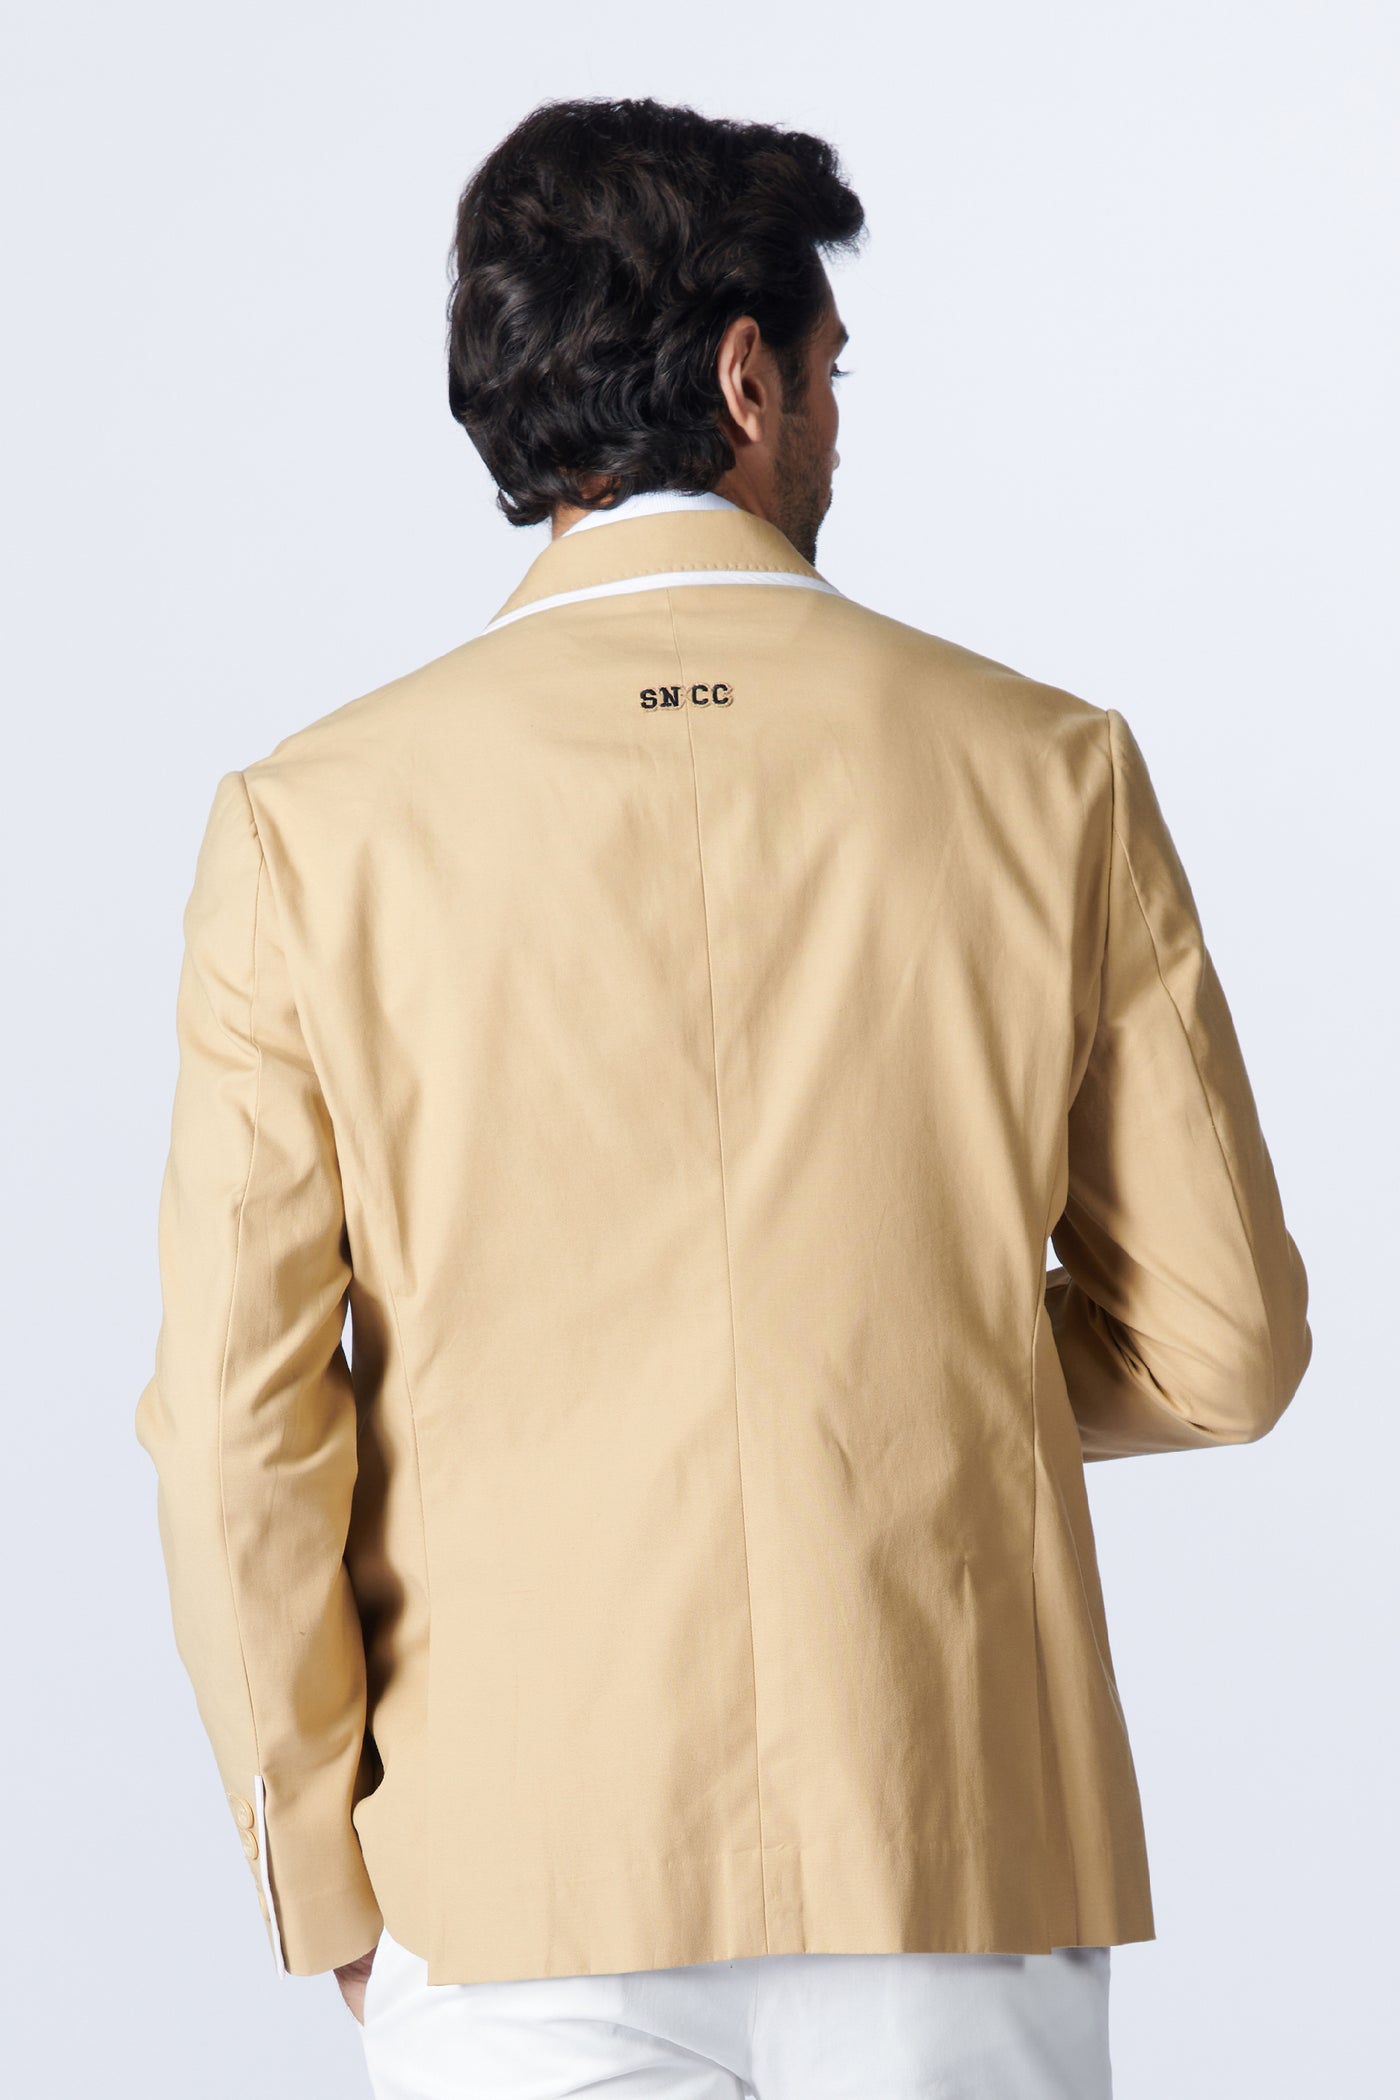 SN By Shantanu Nikhil Menswear SNCC Gentlemen's Beige Jacket indian designer wear online shopping melange singapore